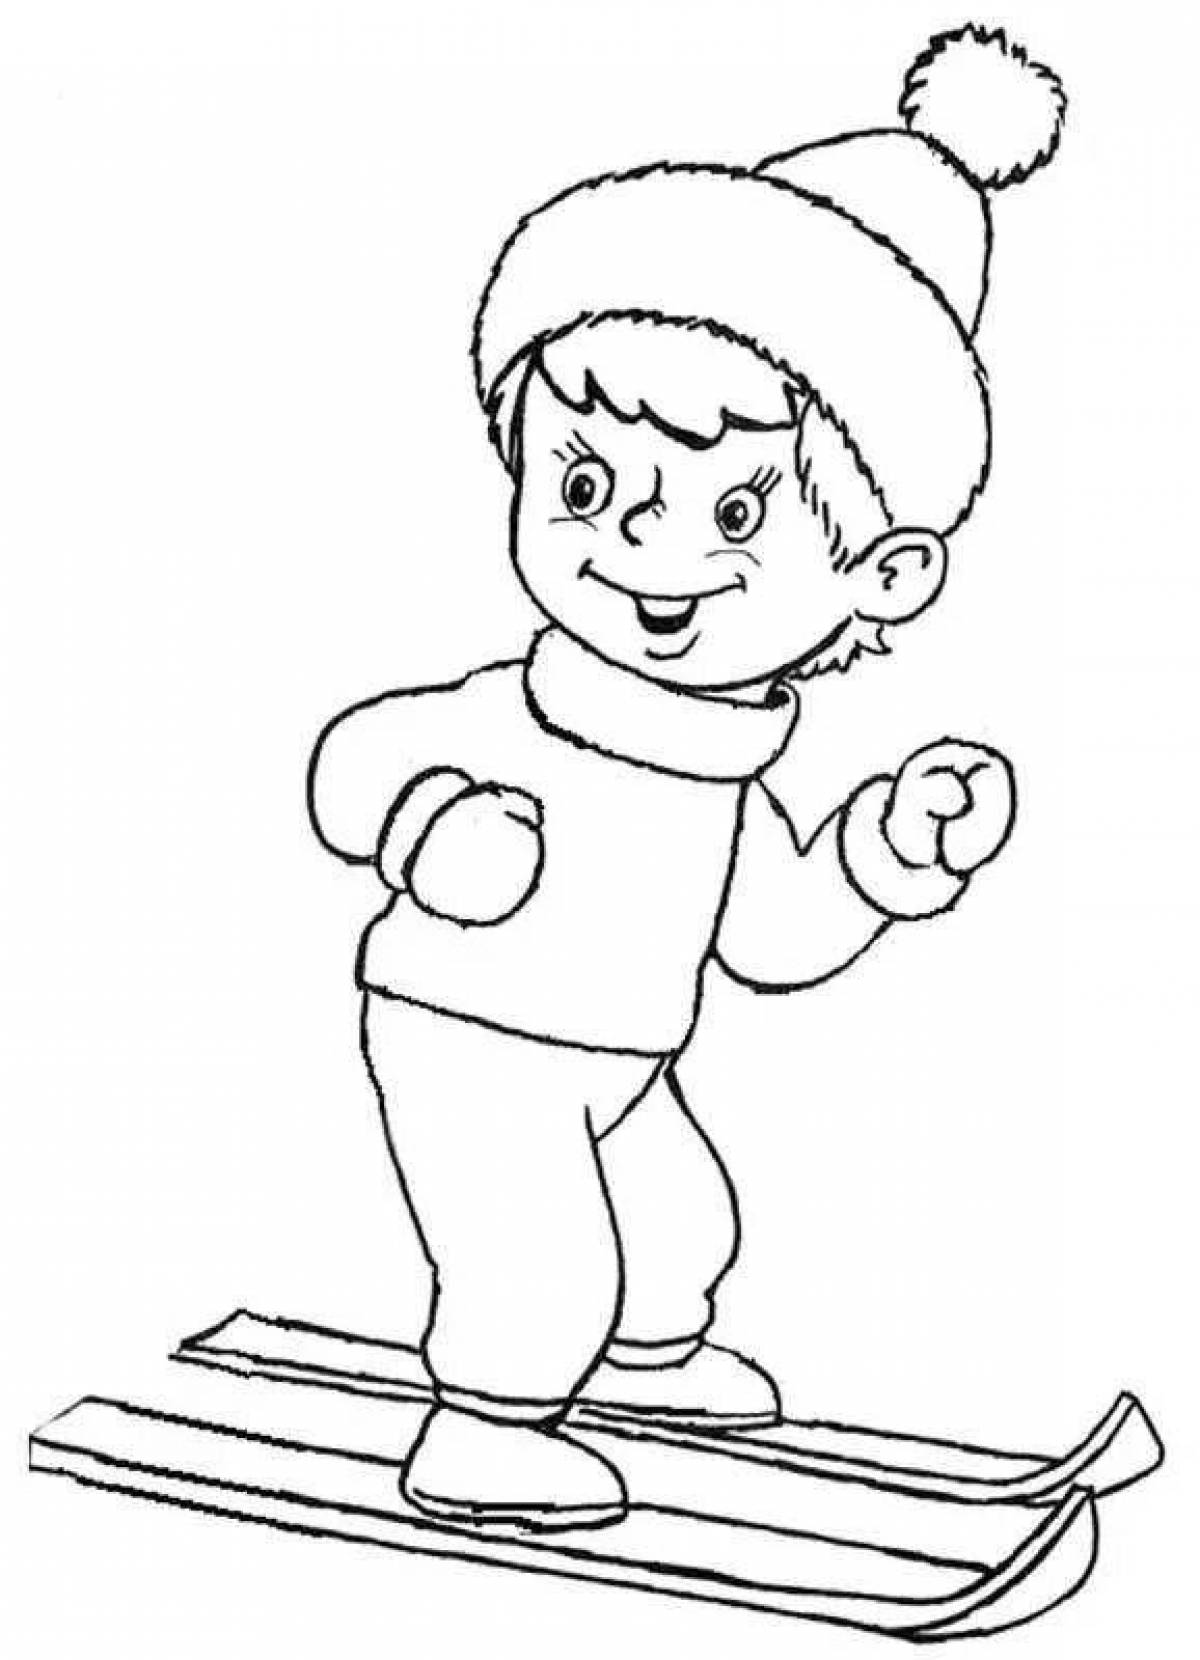 Гламурная раскраска для детей мальчик в зимней одежде